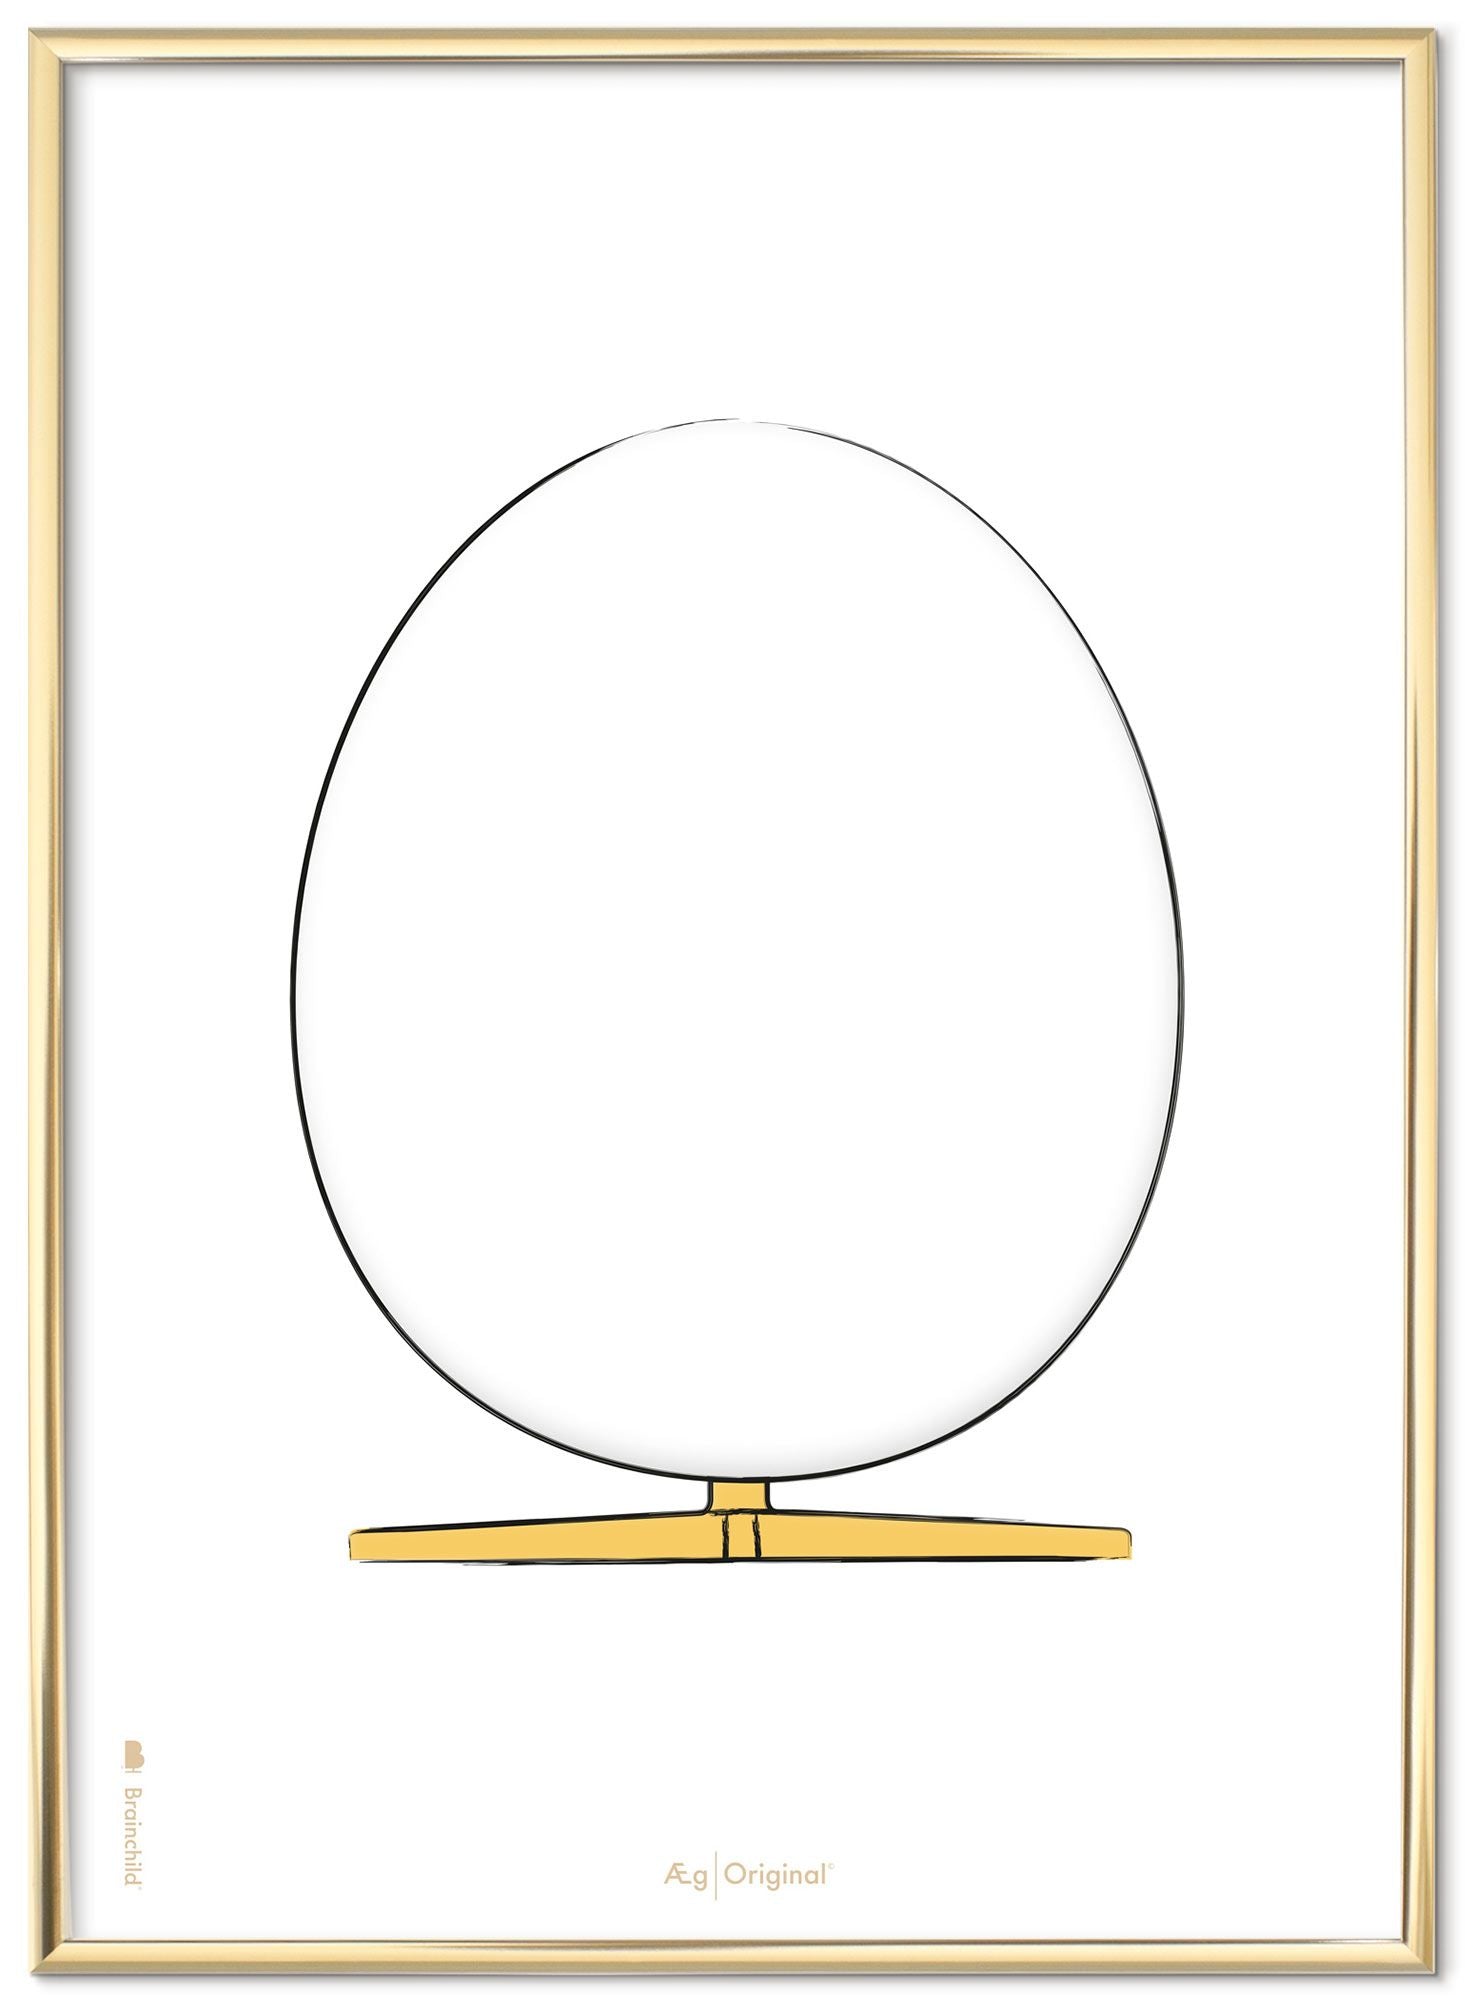 Brainchild Das Egg -Design -Skizze -Poster mit Rahmen aus messingfarbenem Metall A5, weißer Hintergrund